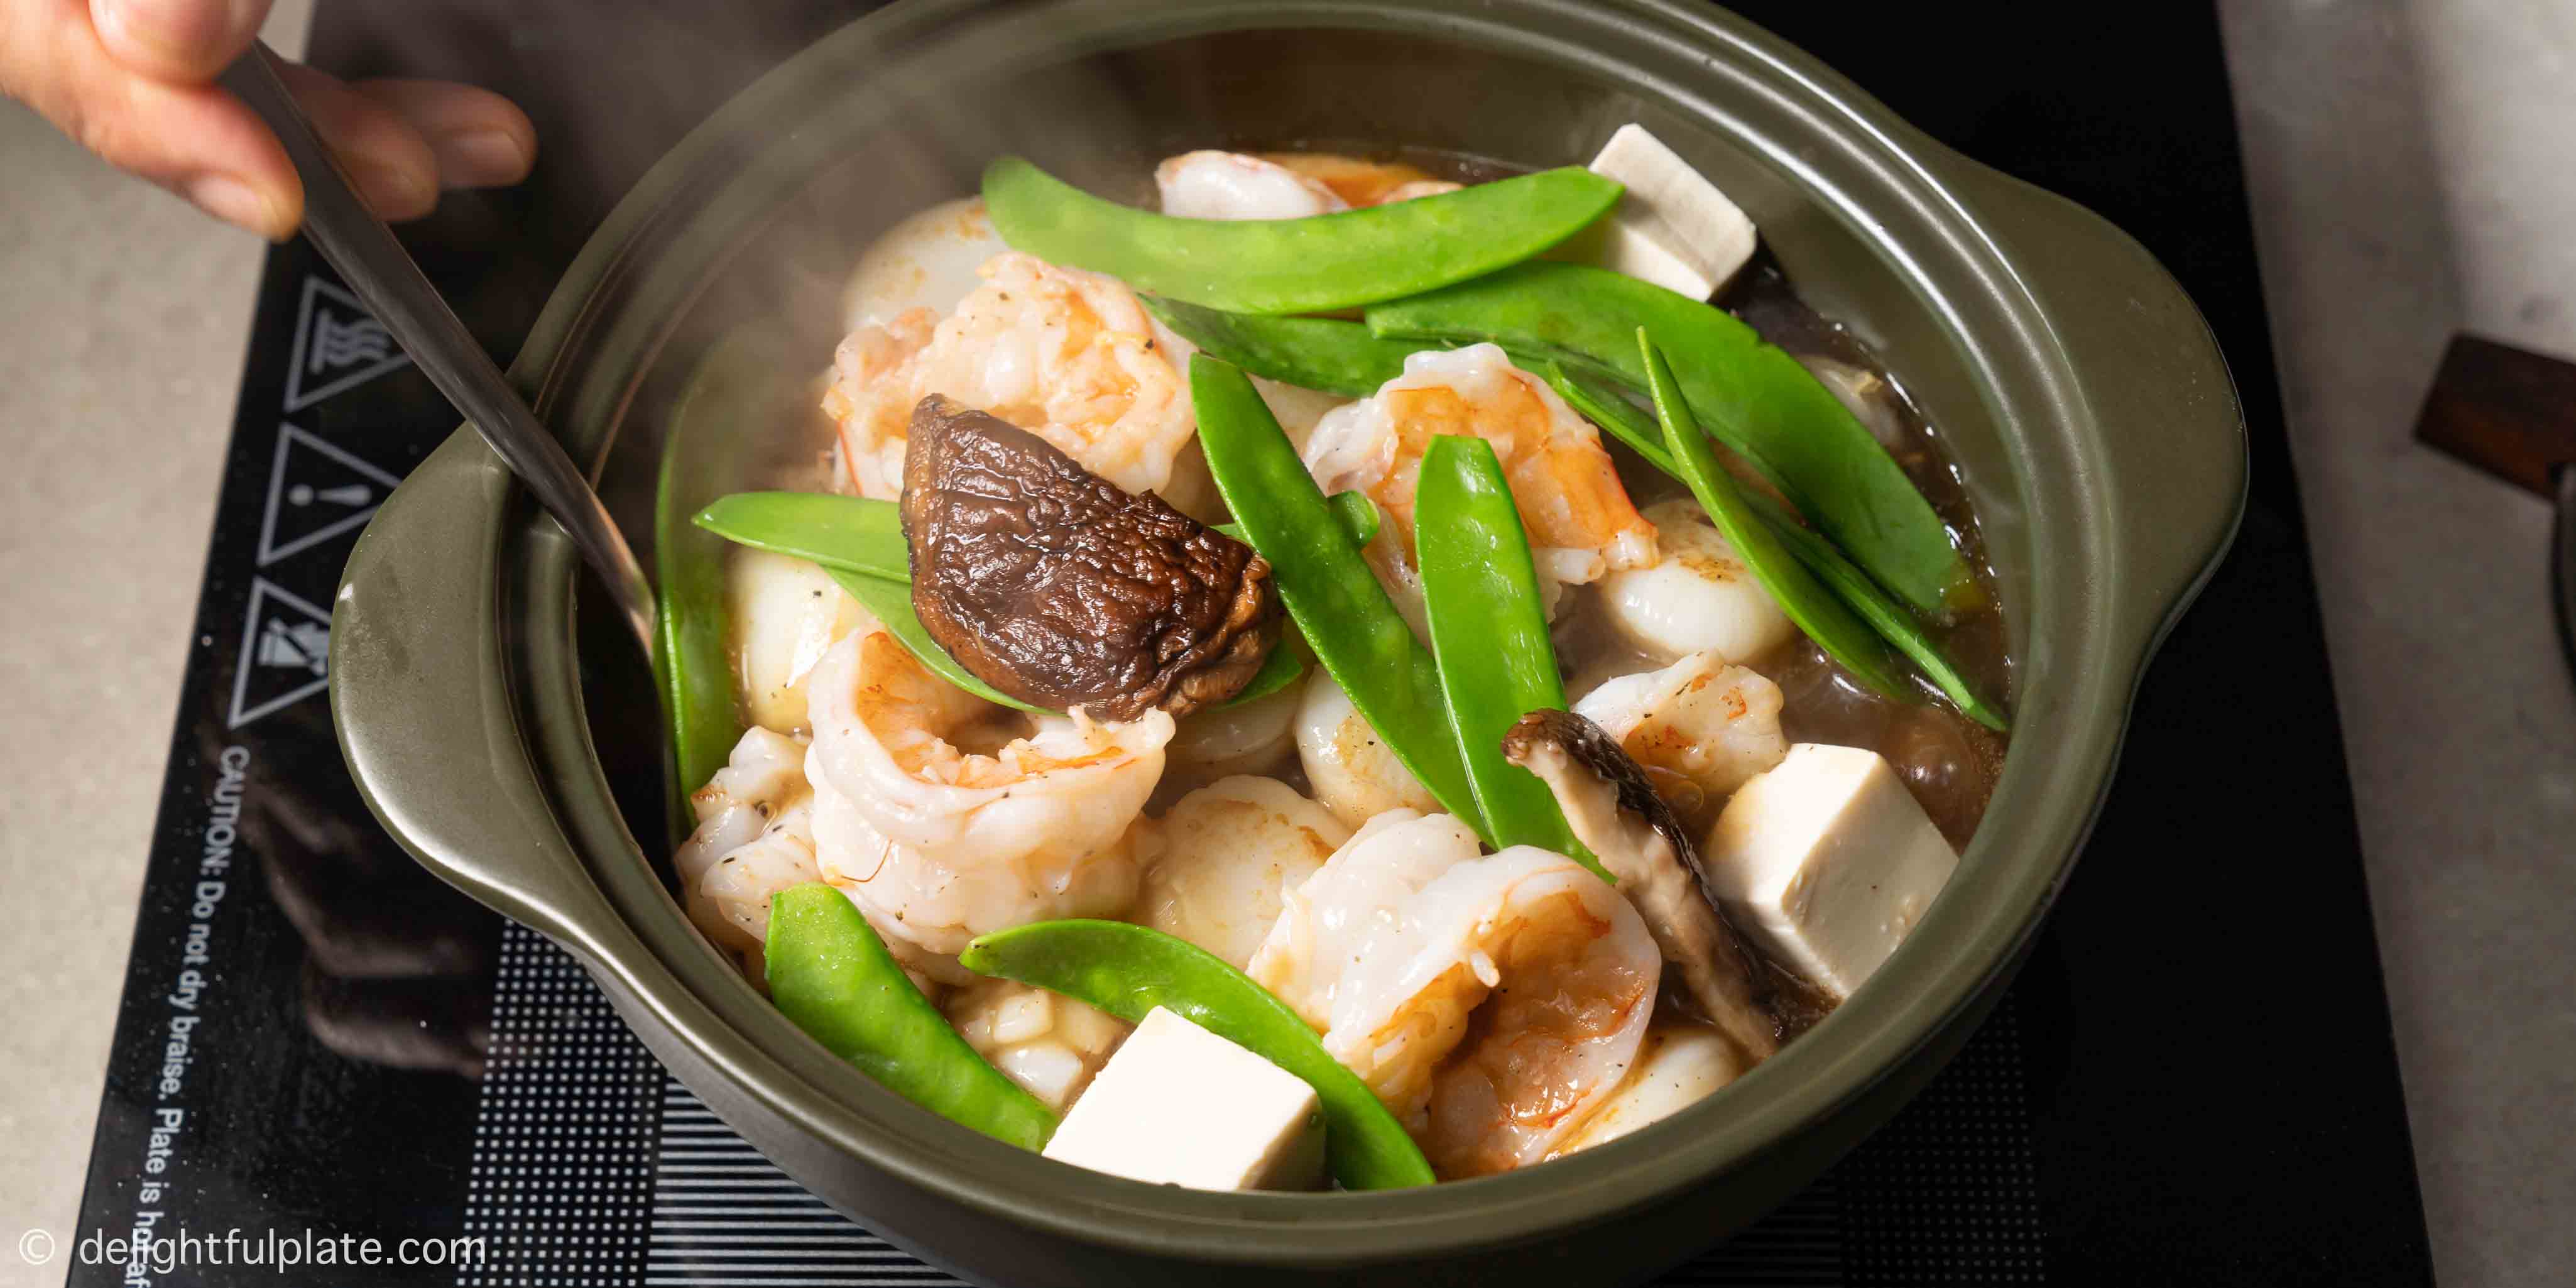 piping hot pot of seafood tofu casserole